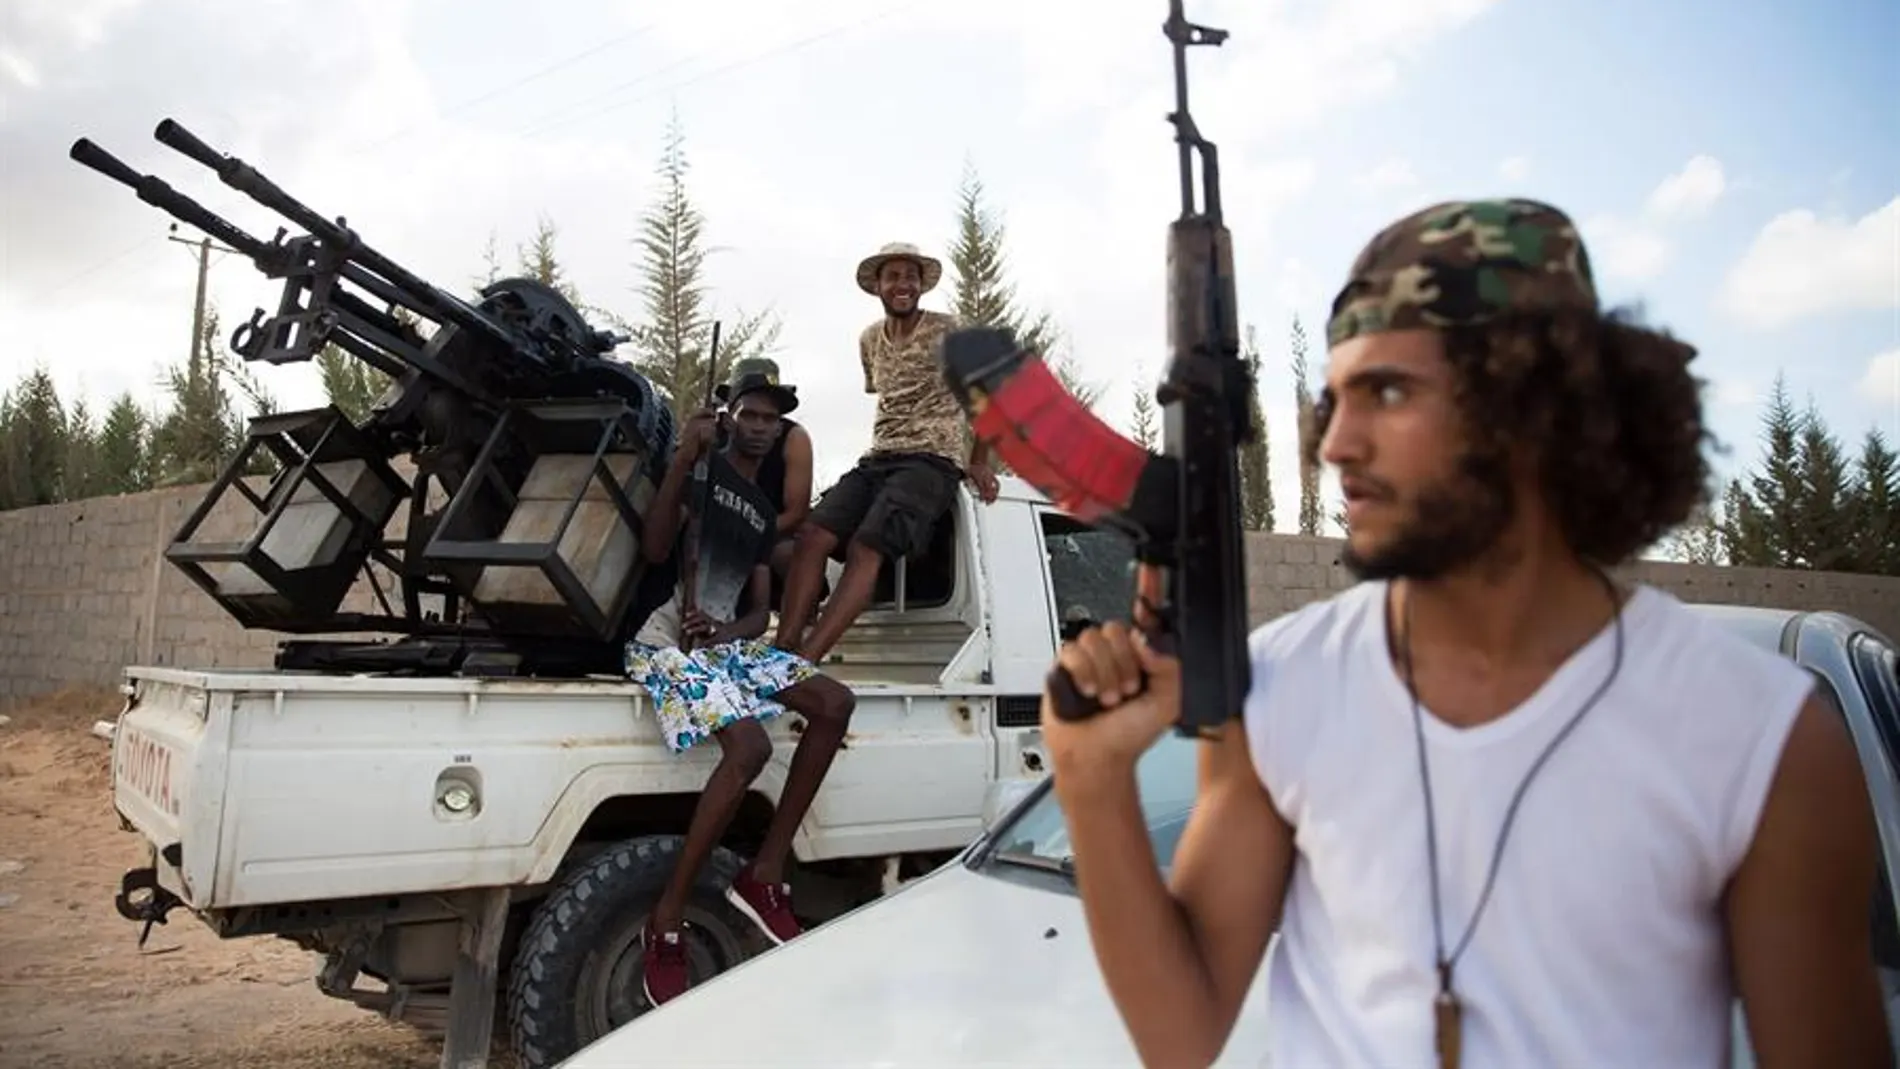 La ONU anuncia un alto el fuego permanente en Libia y la retirada de mercenarios extranjeros